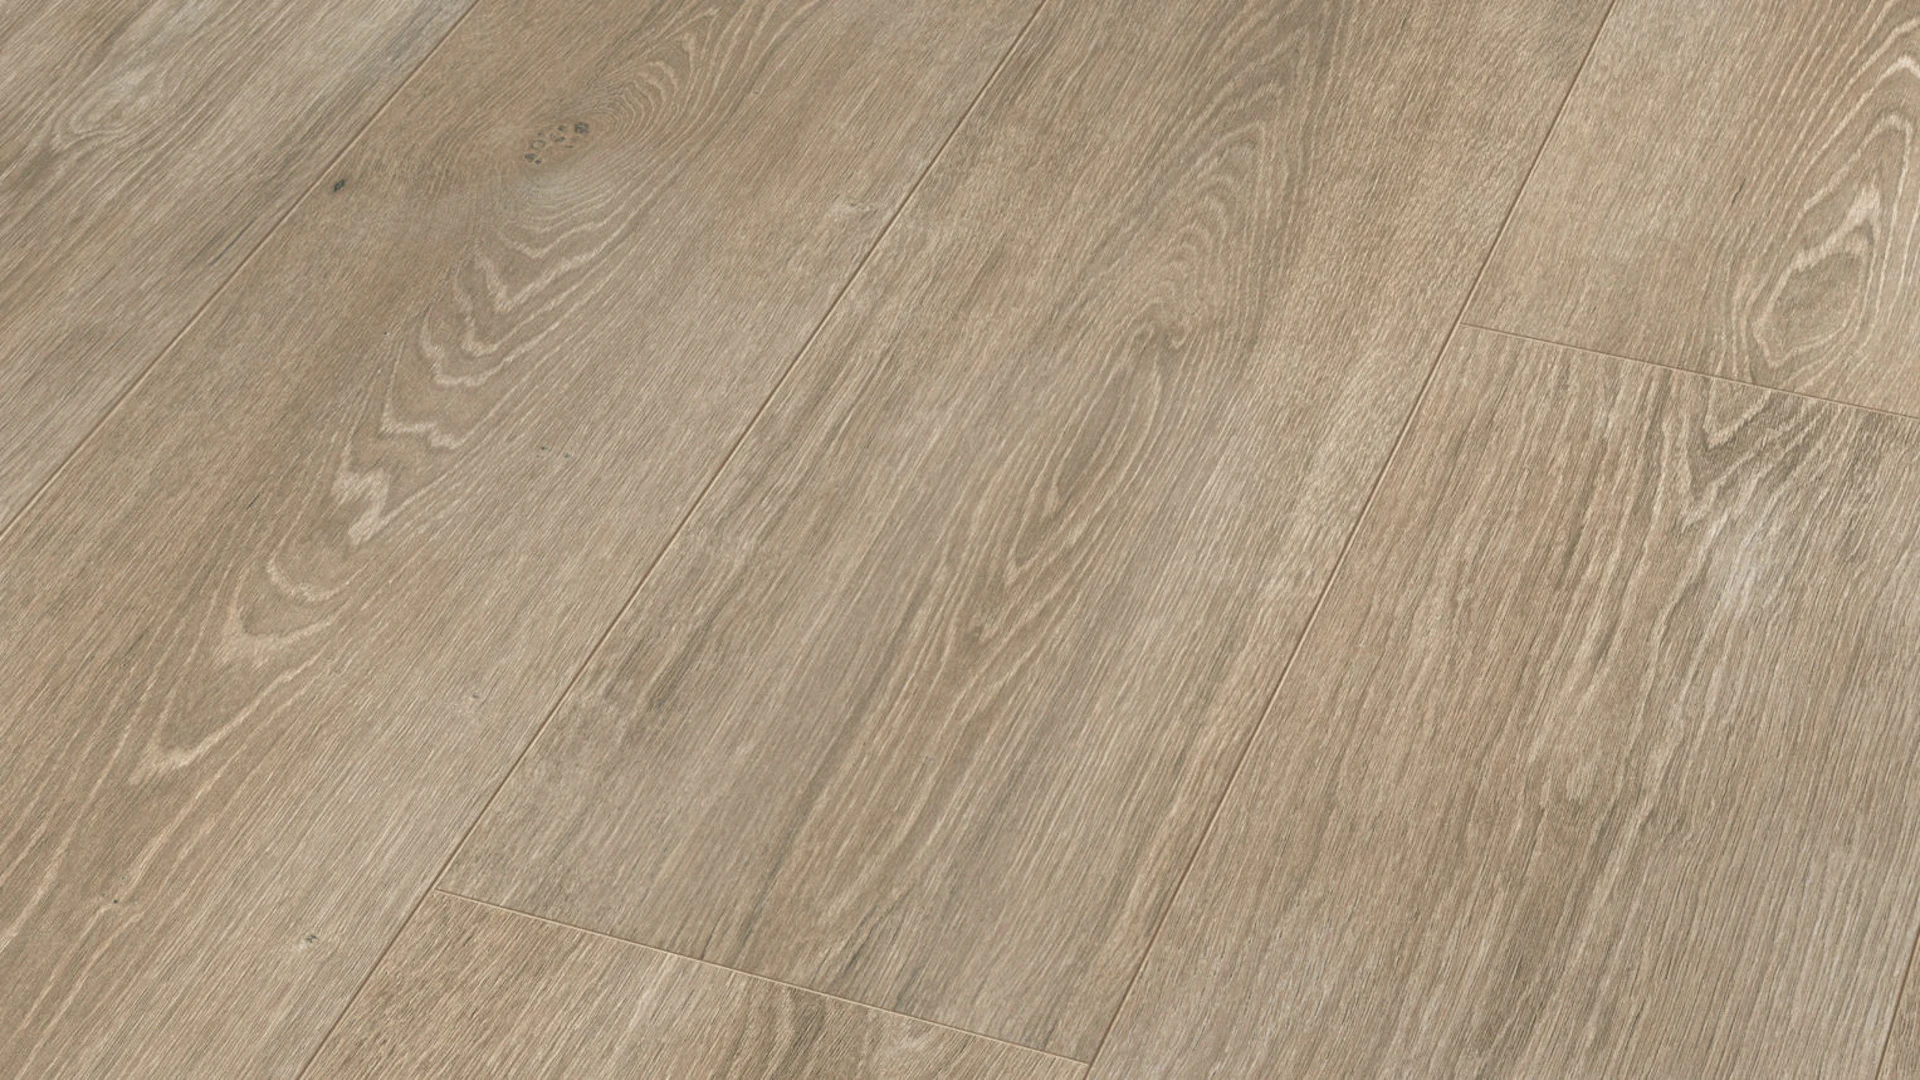 MEISTER Laminate flooring - MeisterDesign LL 250 S Oak white-grey 6277